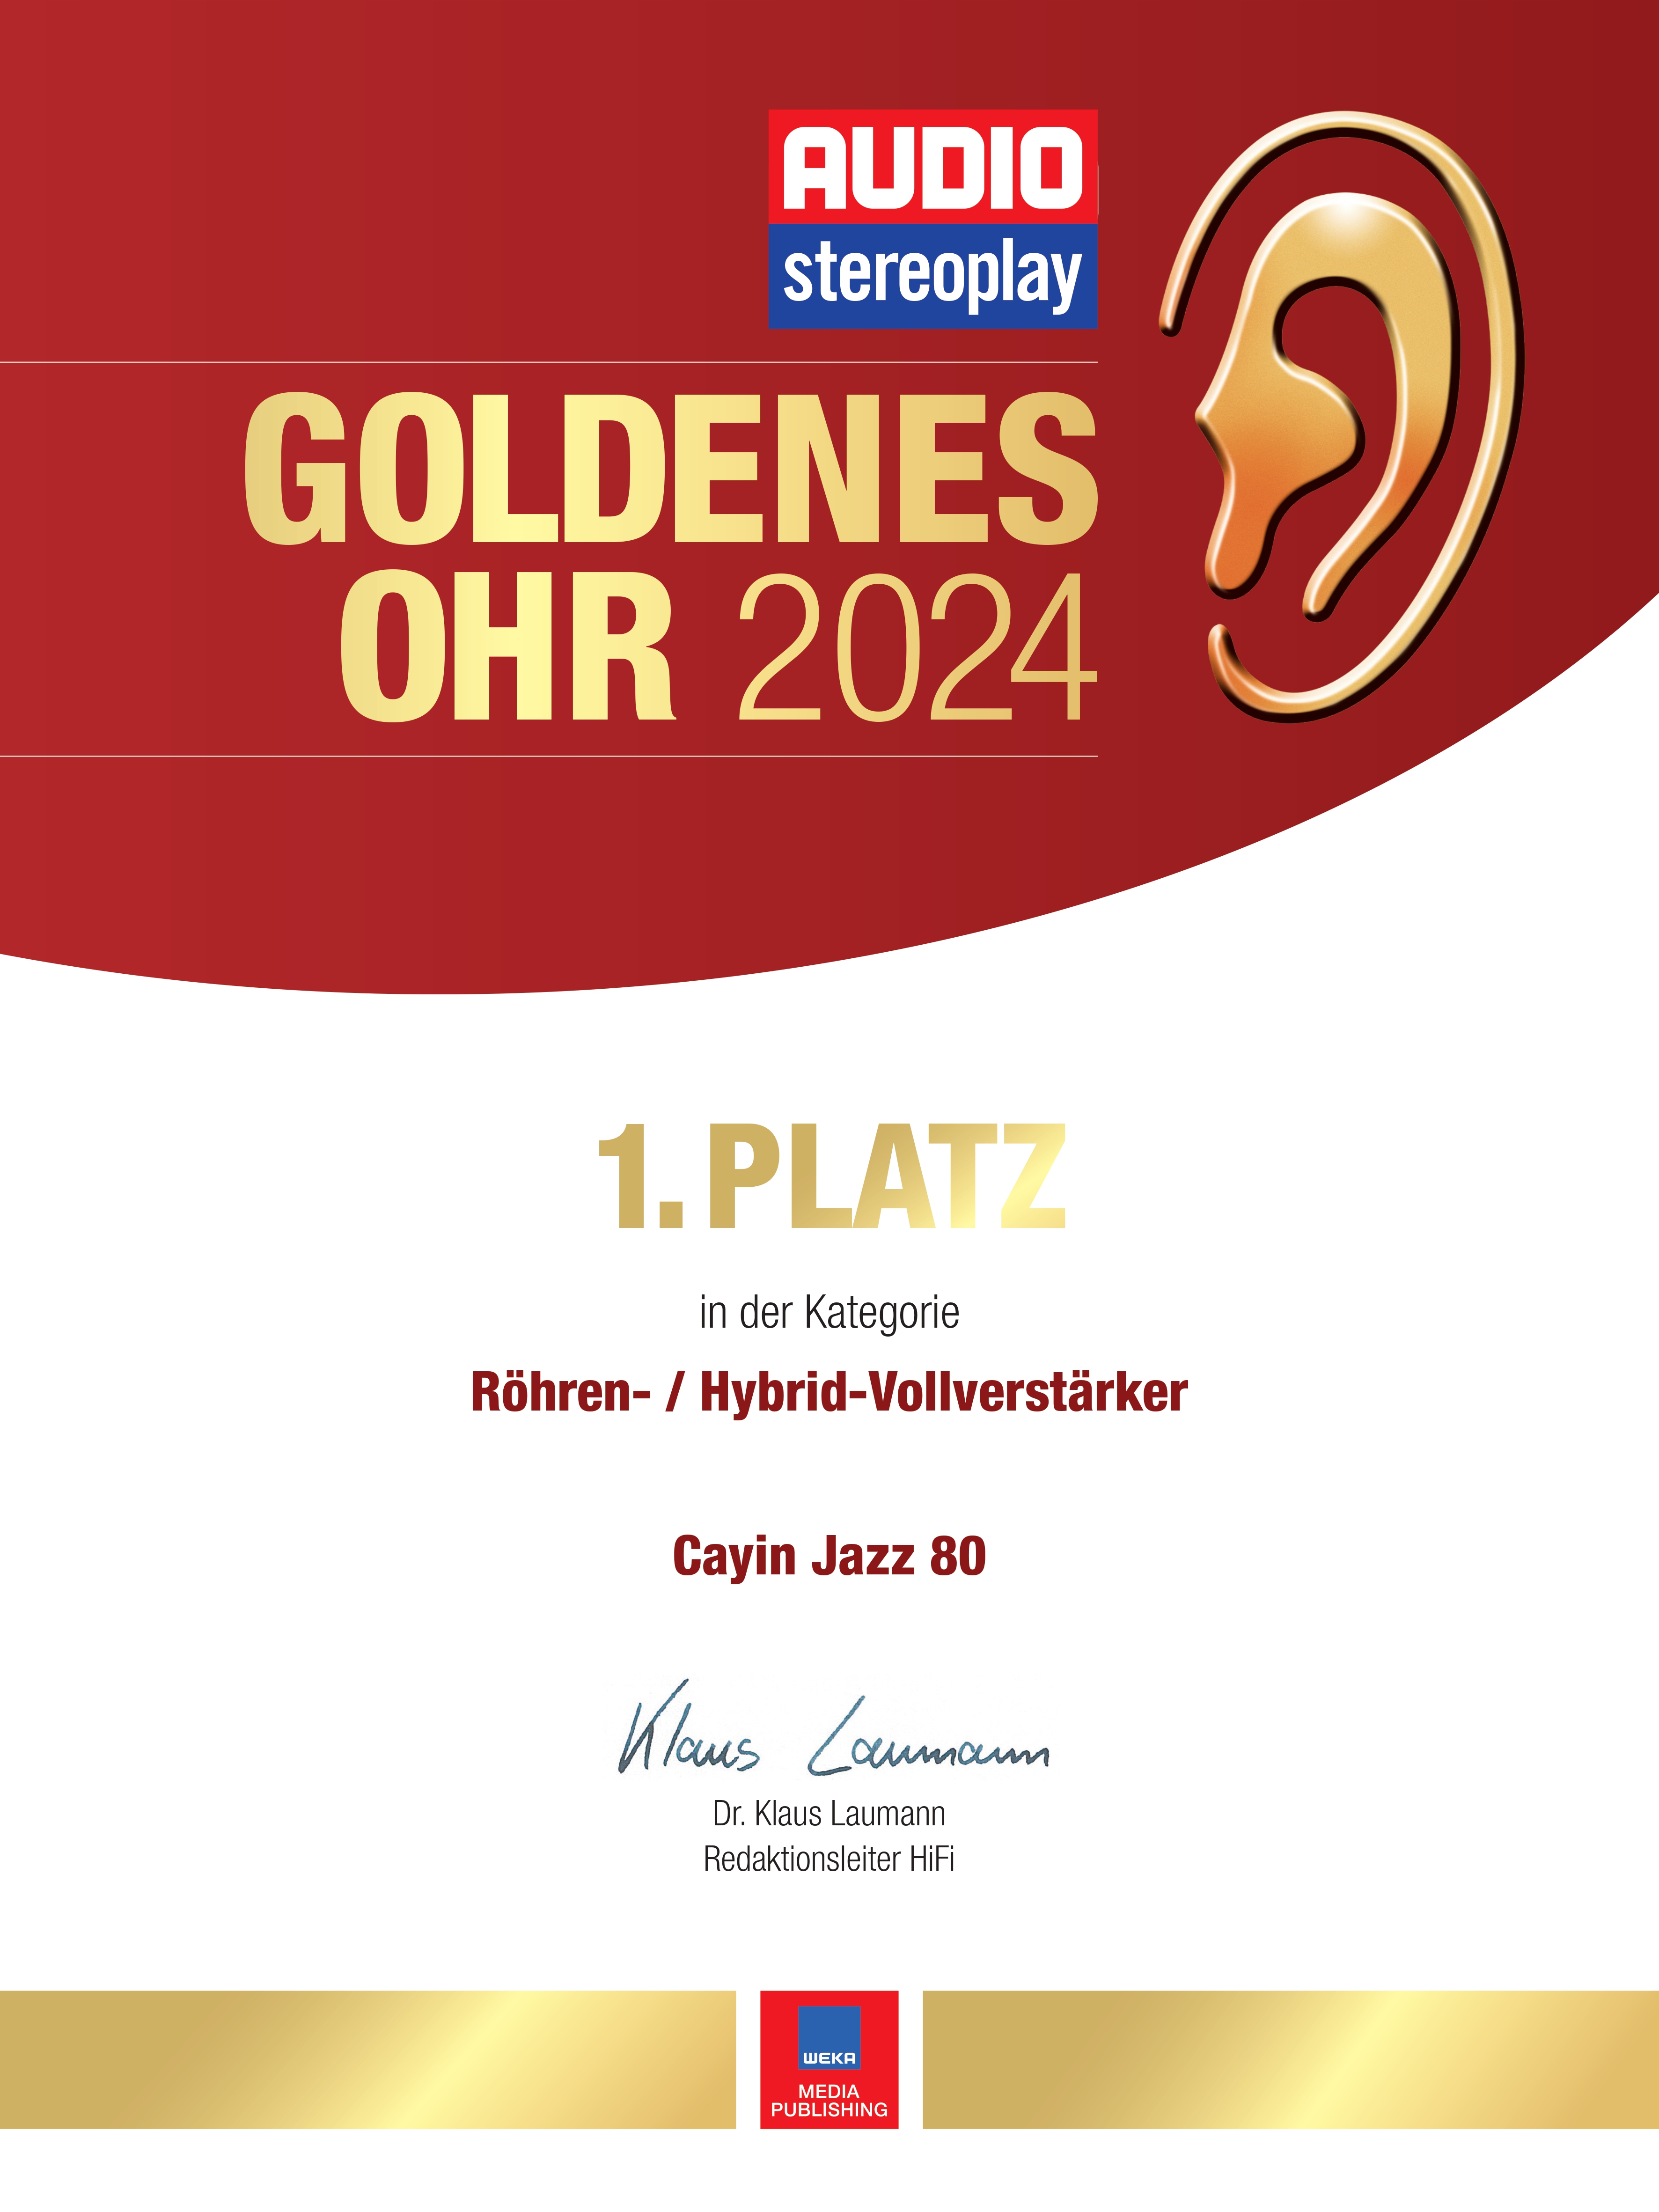 Urkunde Goldenes Ohr 2024 Cayin Jazz 80_page-0001.jpg